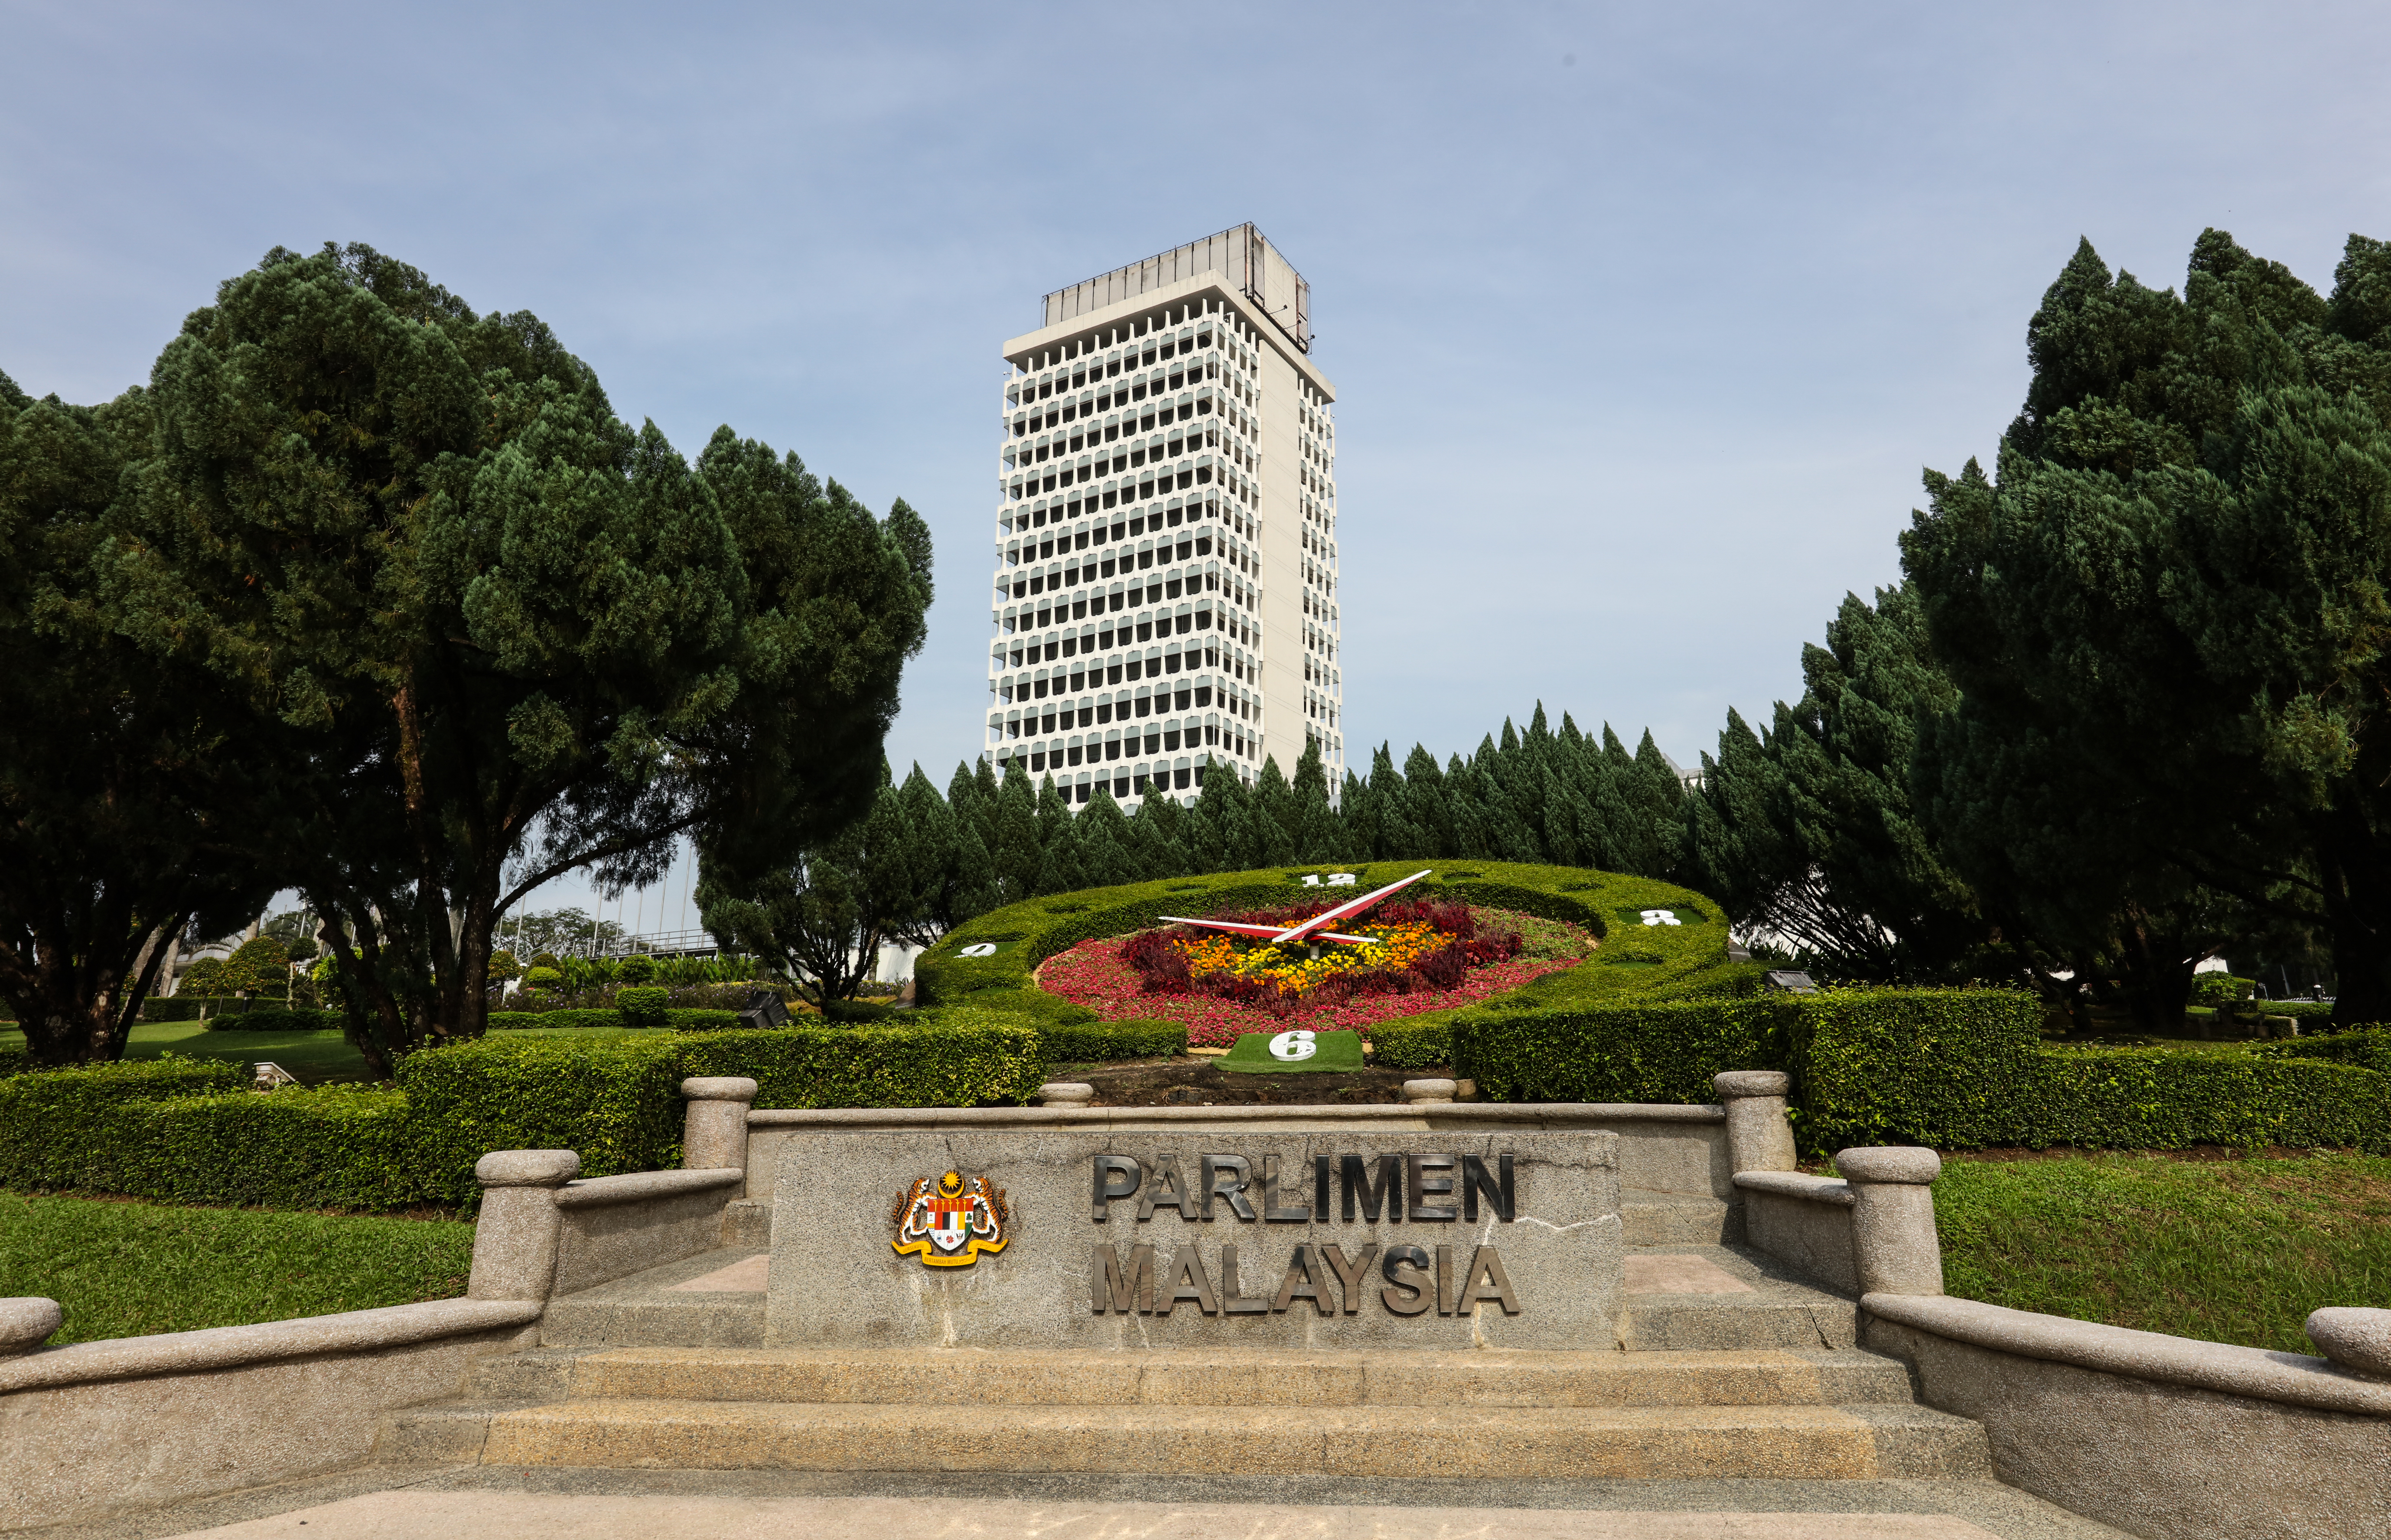 Pantun Budi Oleh YB Senator Tan Sri Dato' Seri Utama Dr. Rais Yatim